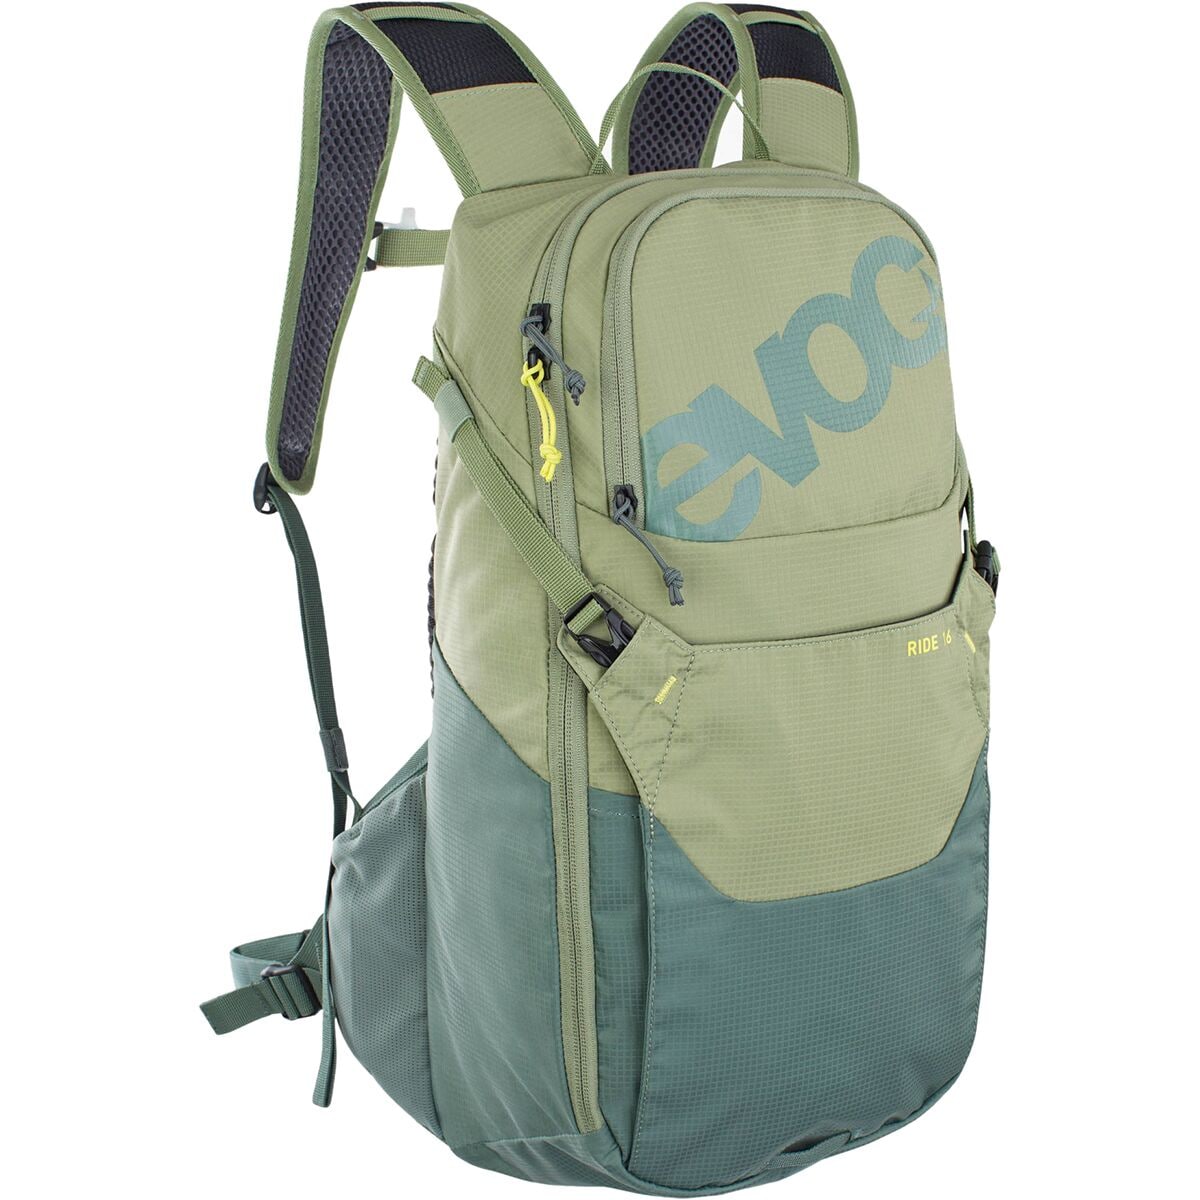 Evoc Ride 16L Backpack Light Olive/Olive, One Size